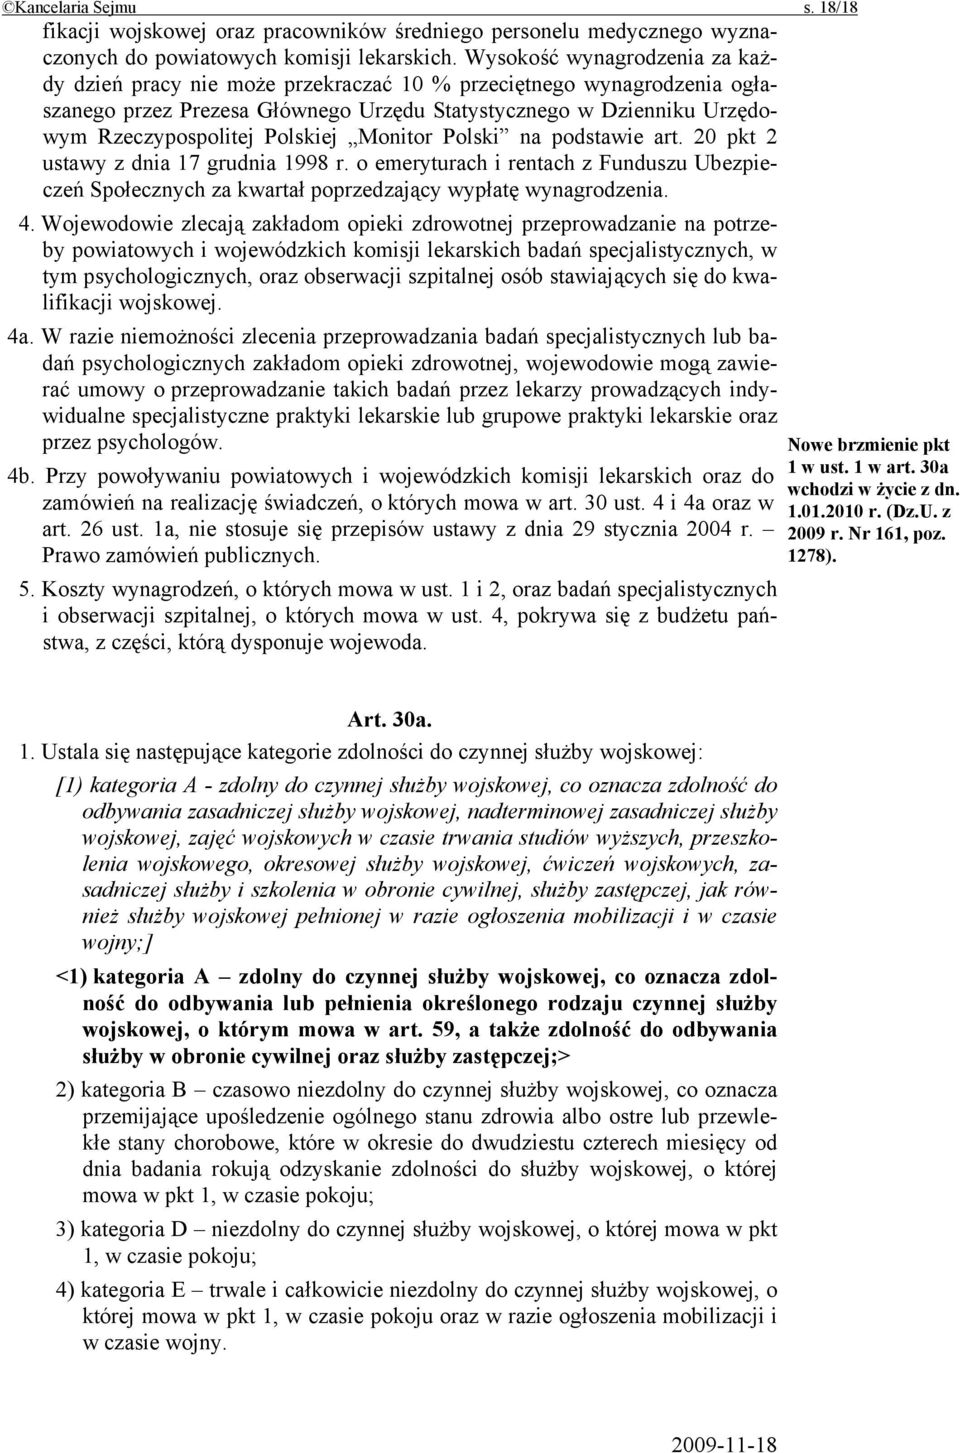 Polskiej Monitor Polski na podstawie art. 20 pkt 2 ustawy z dnia 17 grudnia 1998 r. o emeryturach i rentach z Funduszu Ubezpieczeń Społecznych za kwartał poprzedzający wypłatę wynagrodzenia. 4.